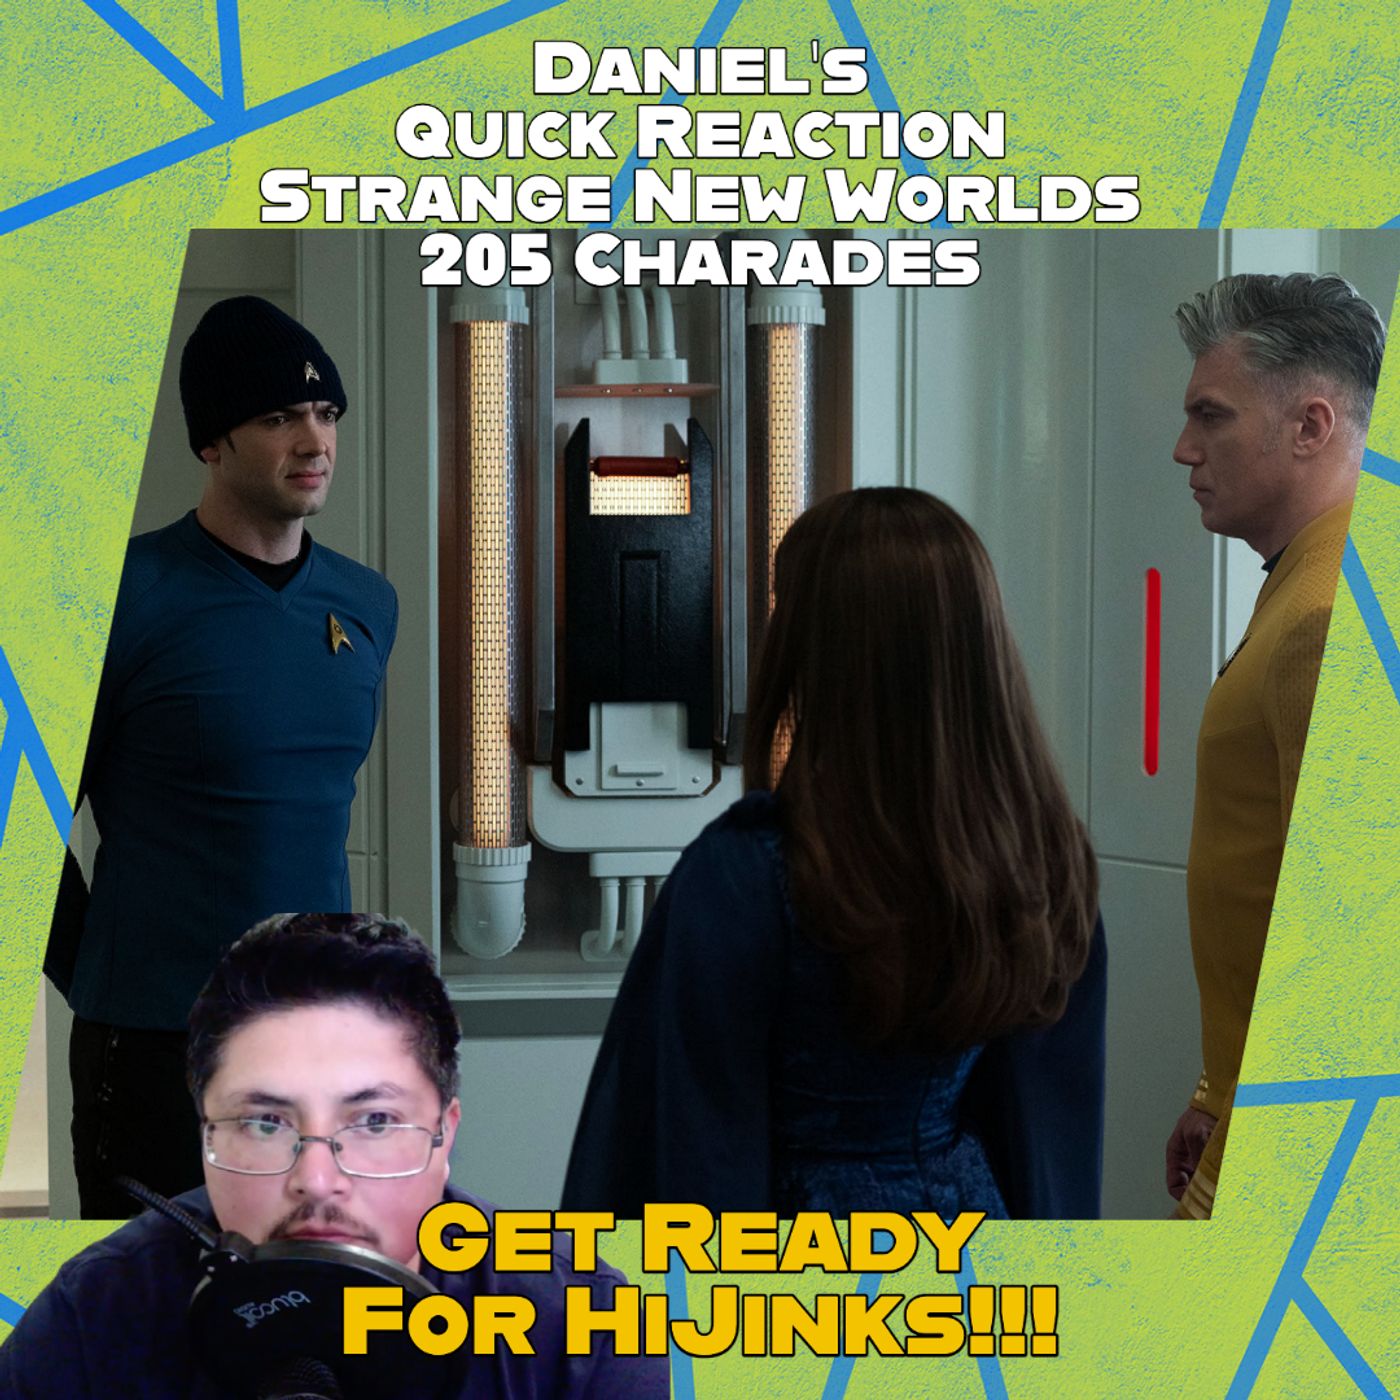 Here’s Daniel’s Quick Reaction of Star Trek Strange New Worlds 205 Charades